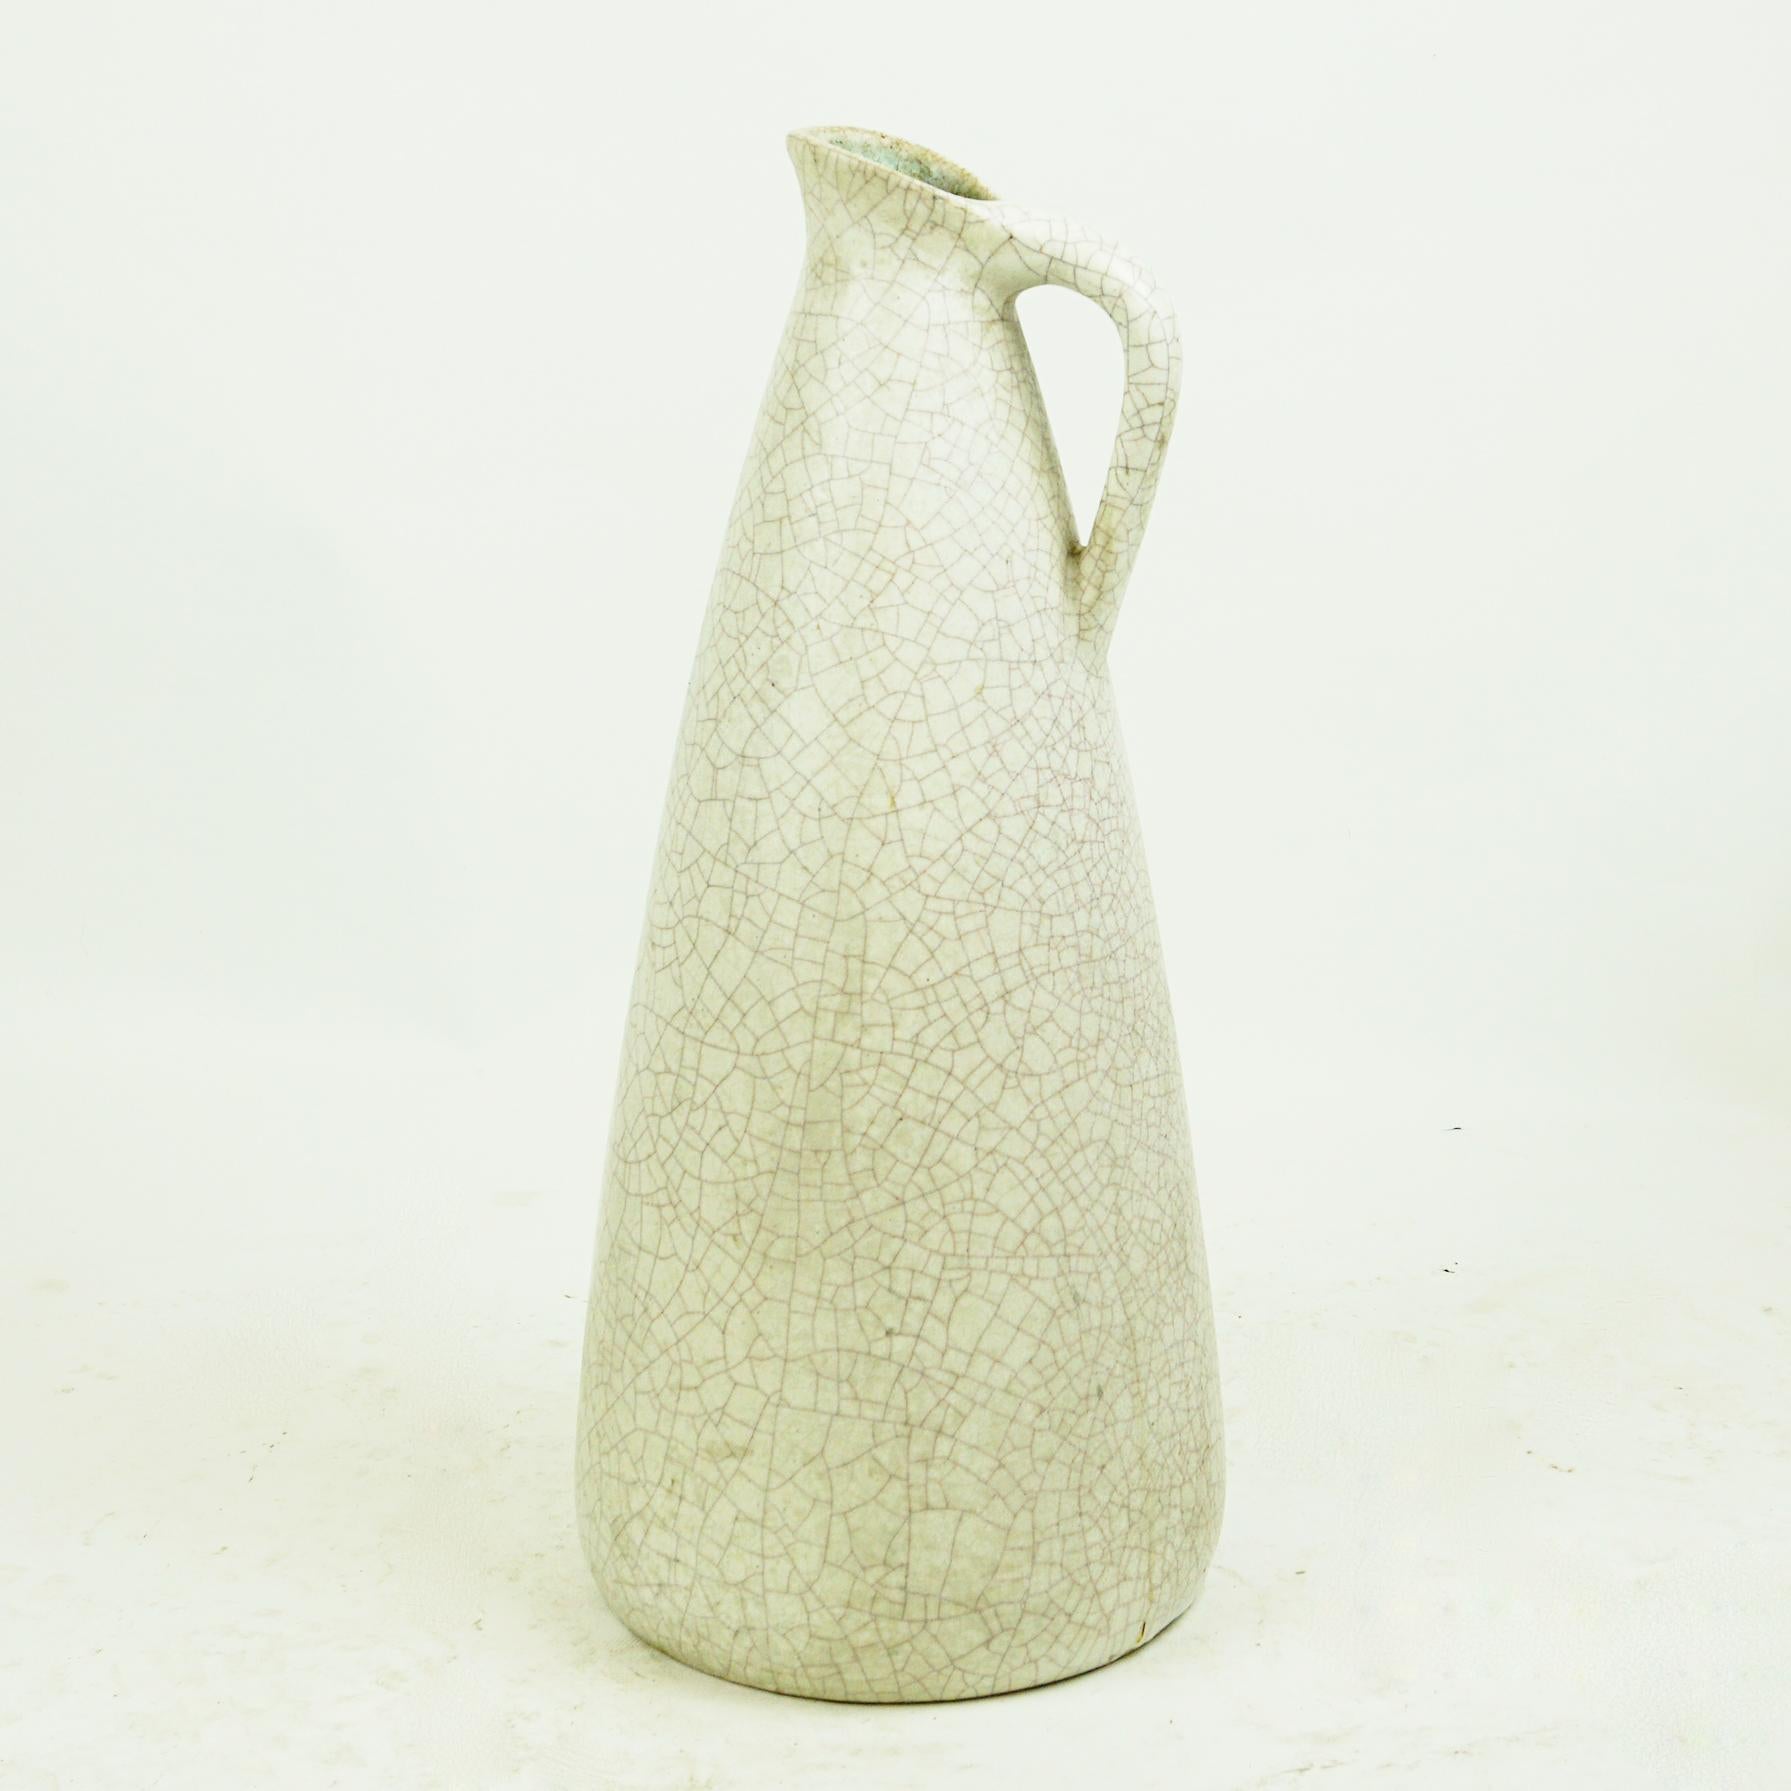 Grand vase ou jarre en céramique allemande du milieu du siècle, avec glaçure craquelée blanc cassé. Marqué sur le dessous : Handmade Germany, L.
        